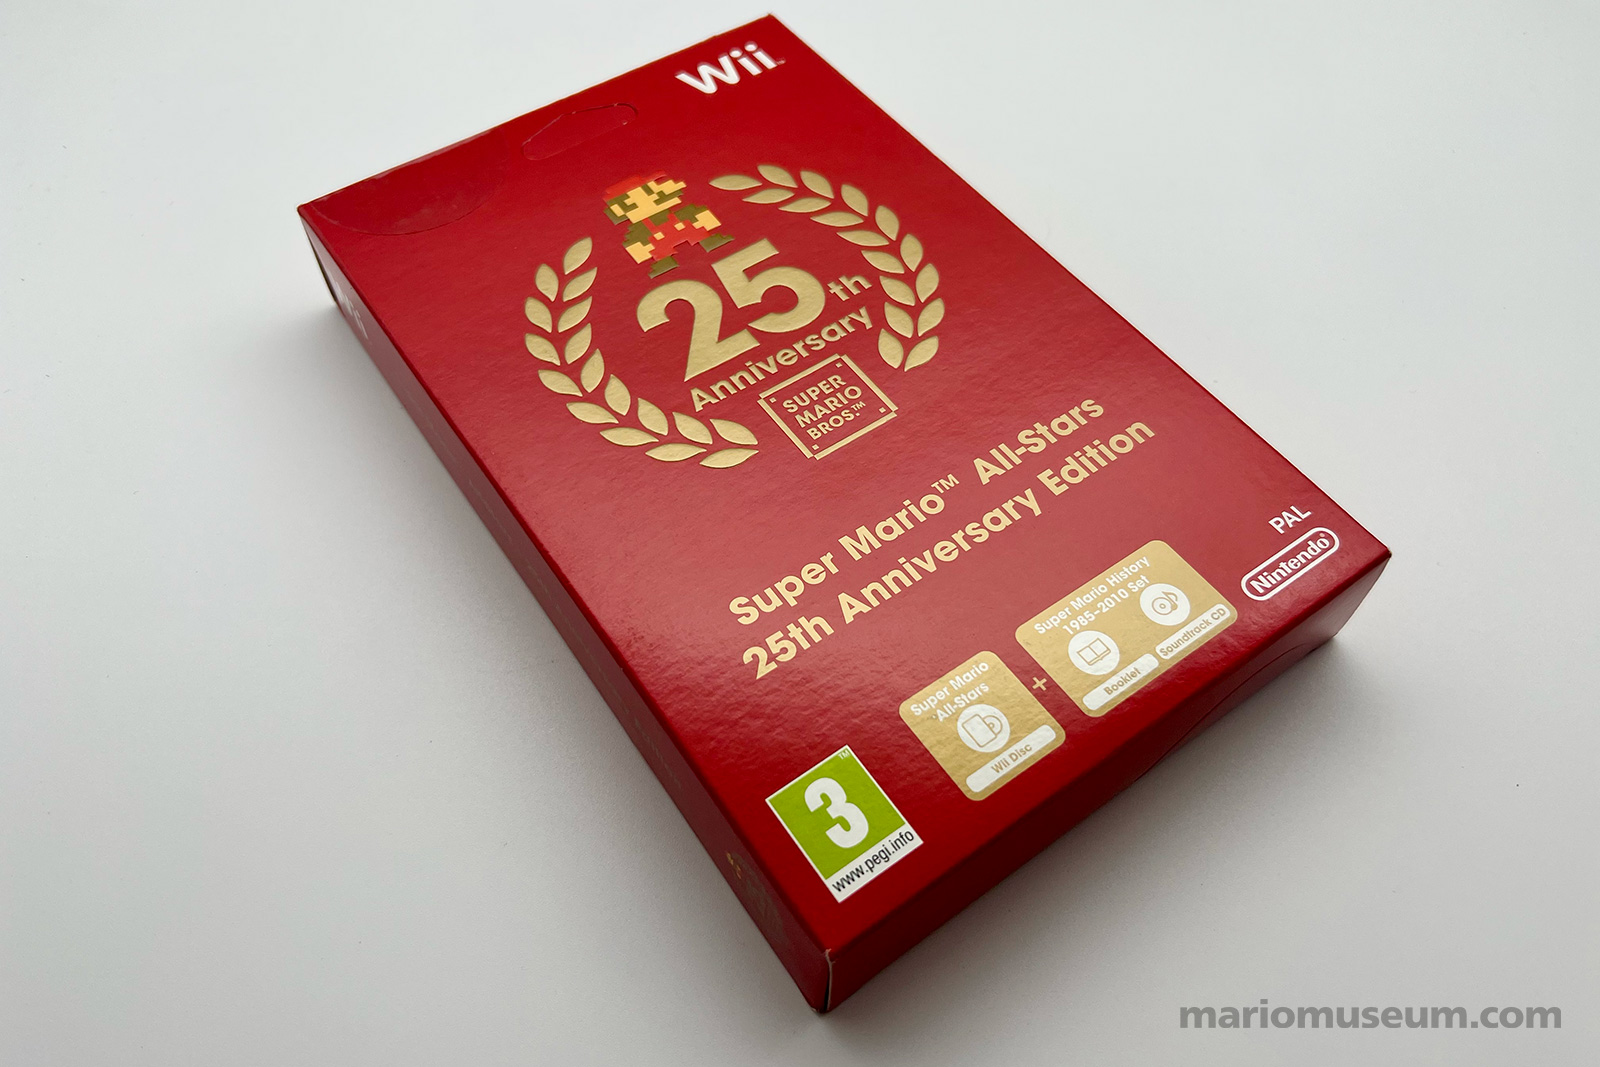 Super Mario Allstars 25th Anniversary Edition, Wii